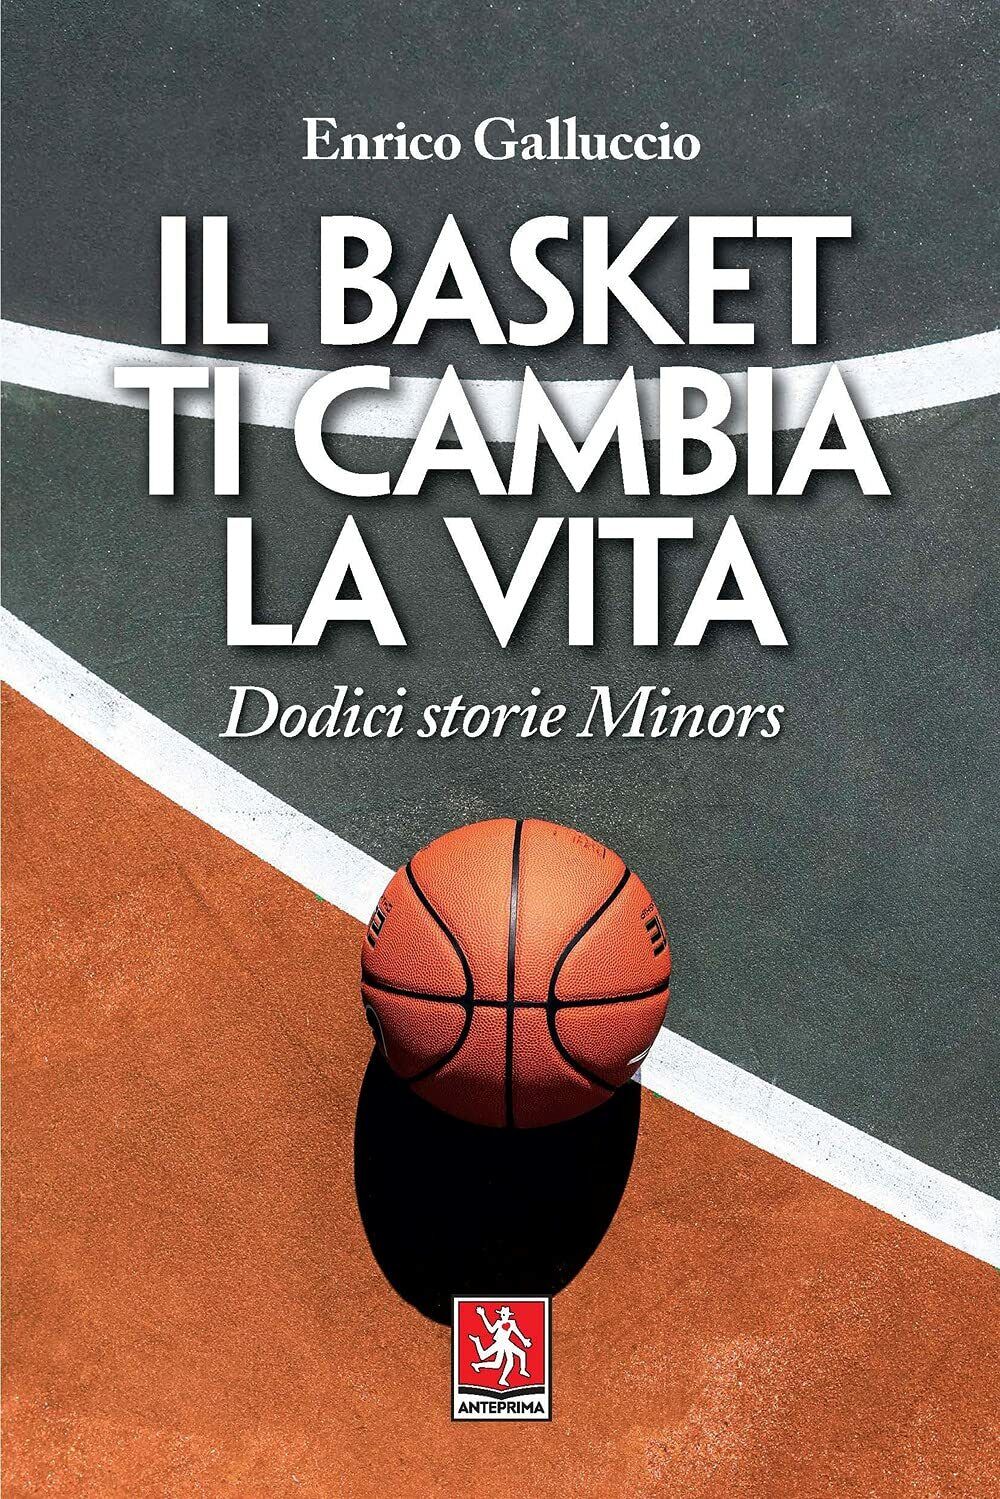 Il basket ti cambia la vita - Enrico Galluccio - Anteprima Edizioni, 2021